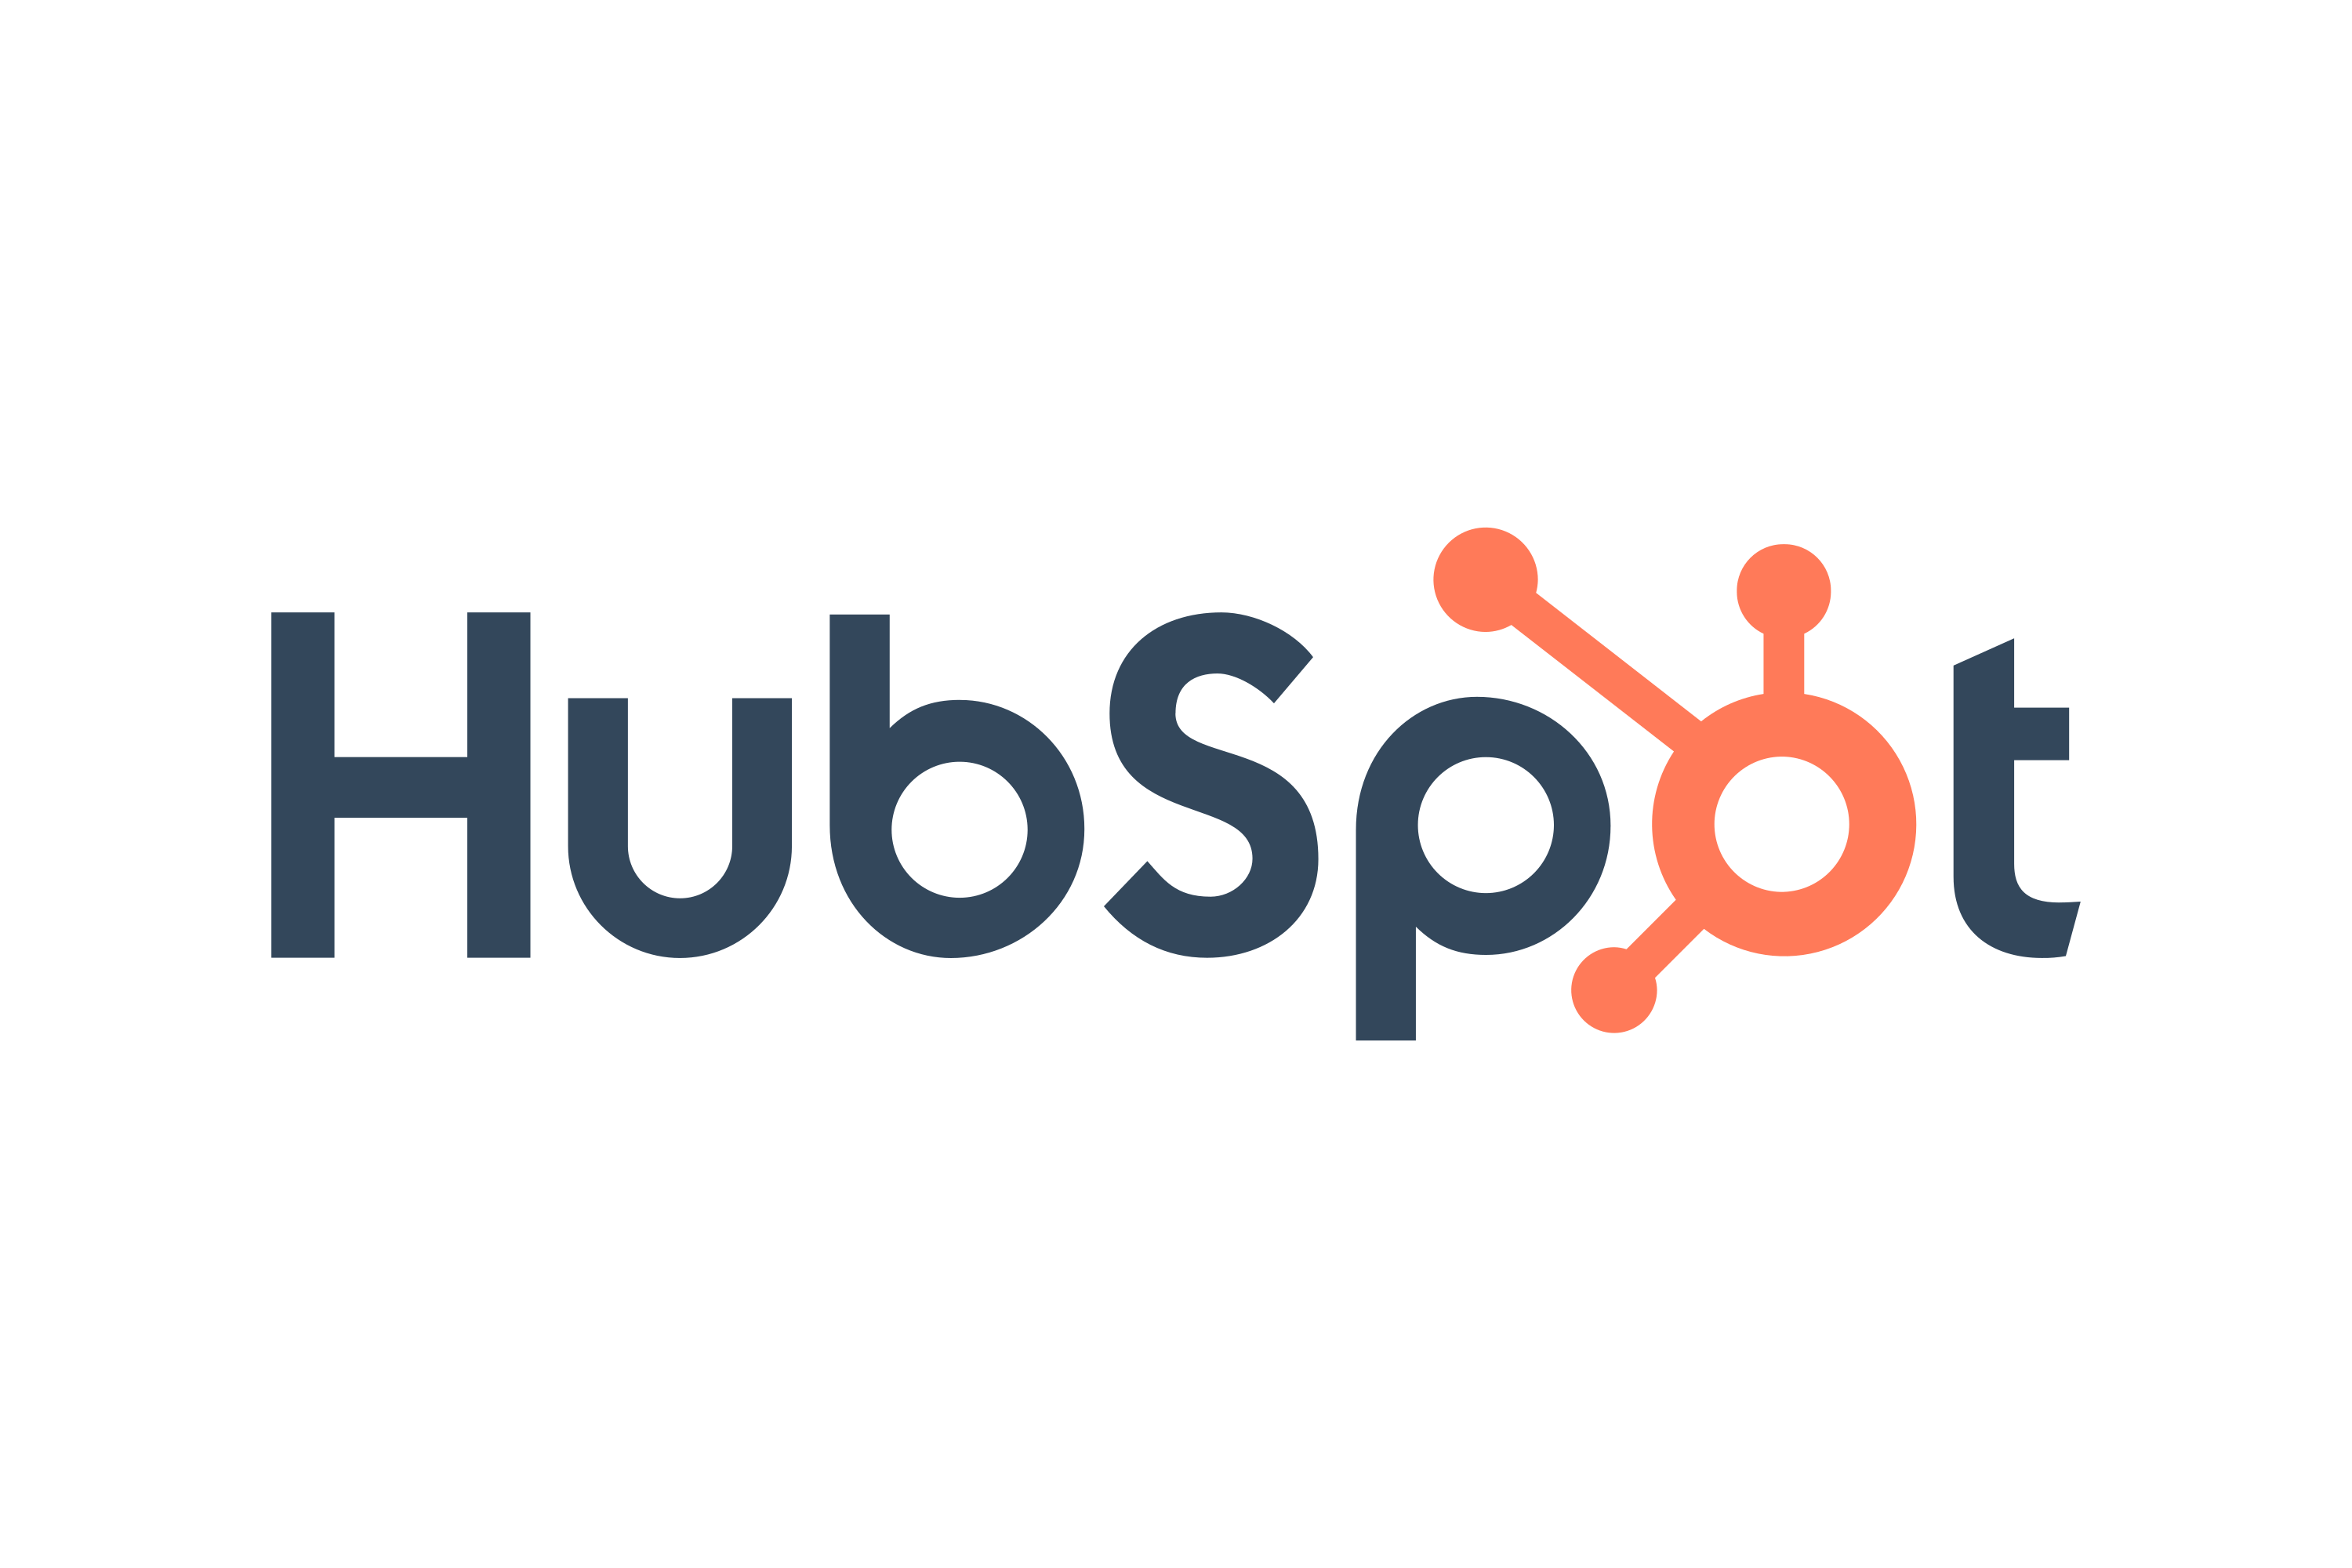 Download HubSpot Logo in SVG Vector or PNG File Format - Logo.wine